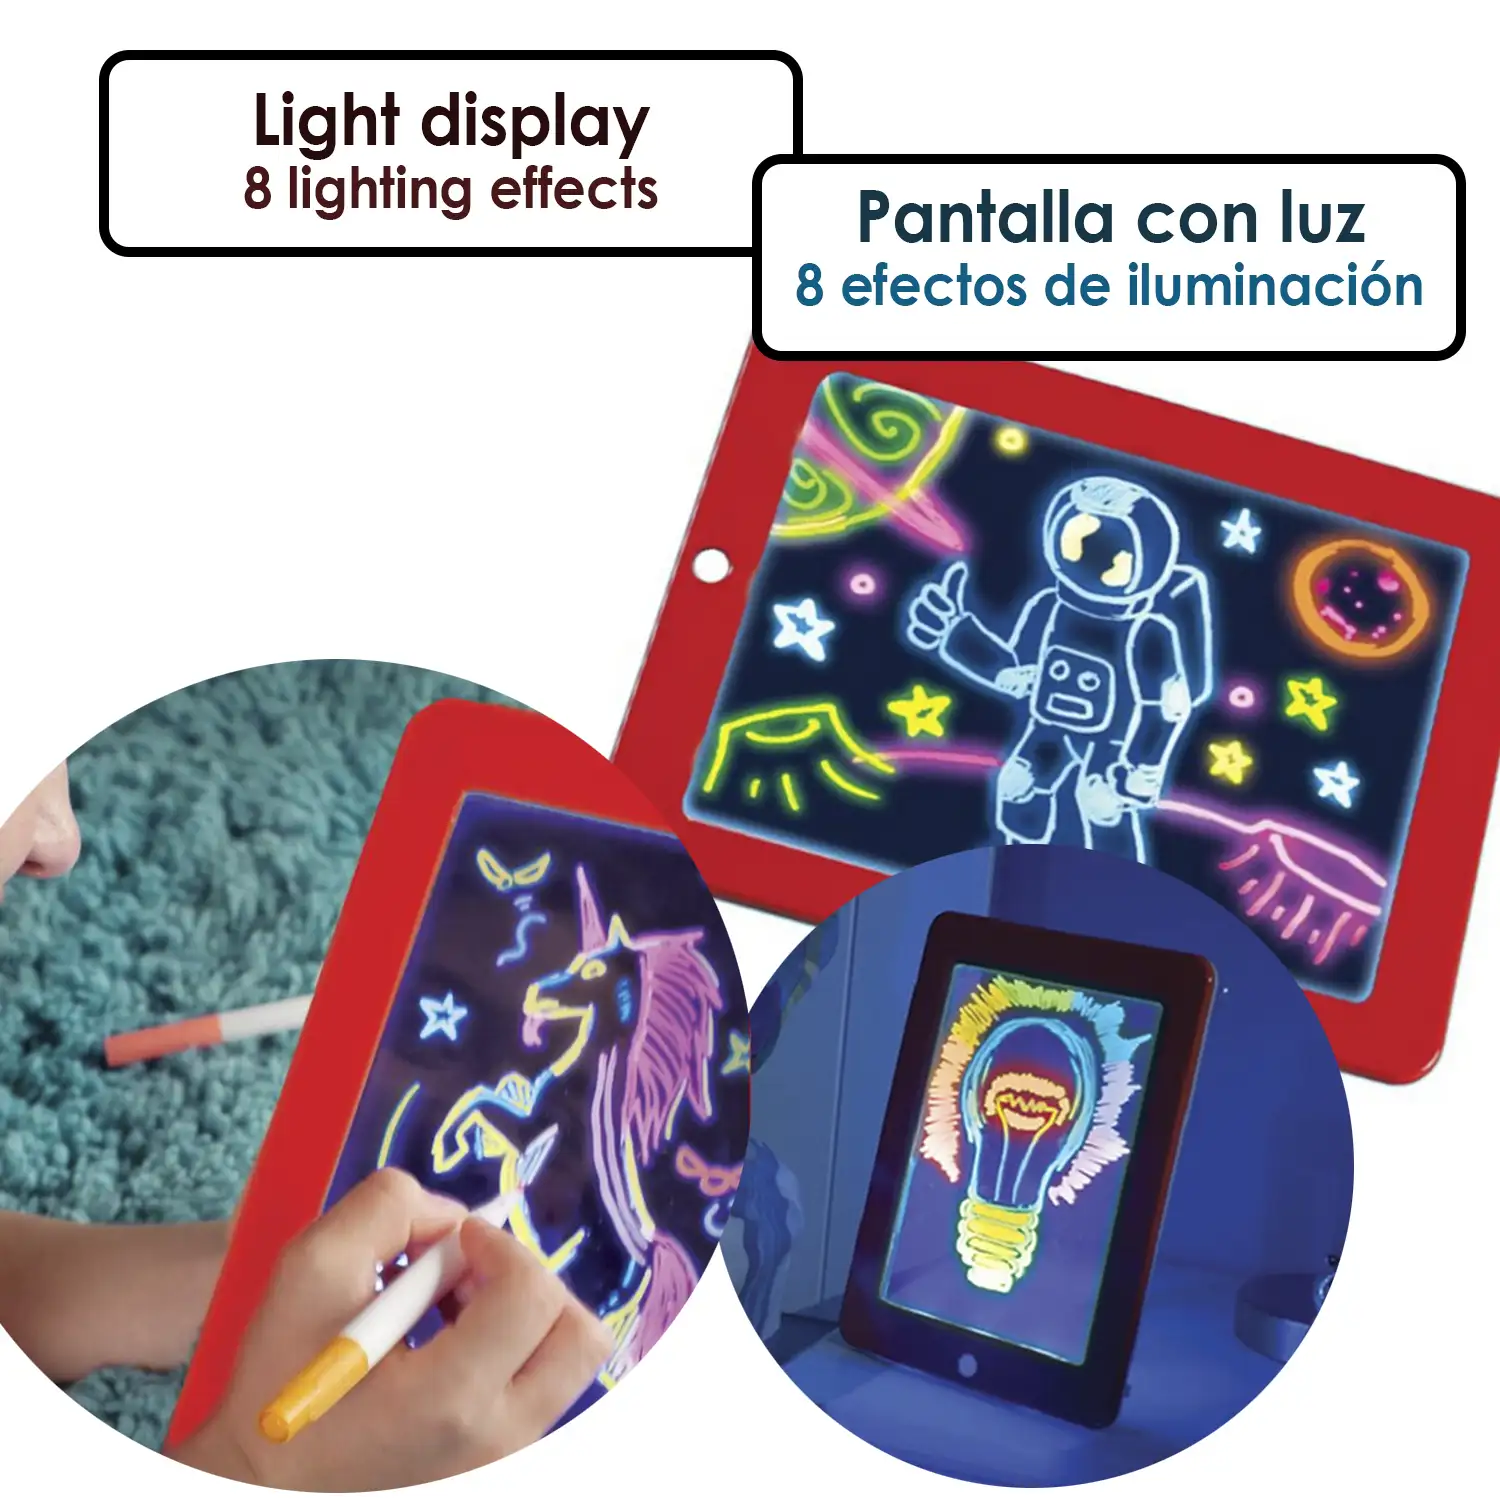 3D Magic Pad Tableta LED de escritura y dibujo. 8 efectos de luz fluorescentes. Rotuladores en 6 colores y fichas de juego, pintura y escritura.